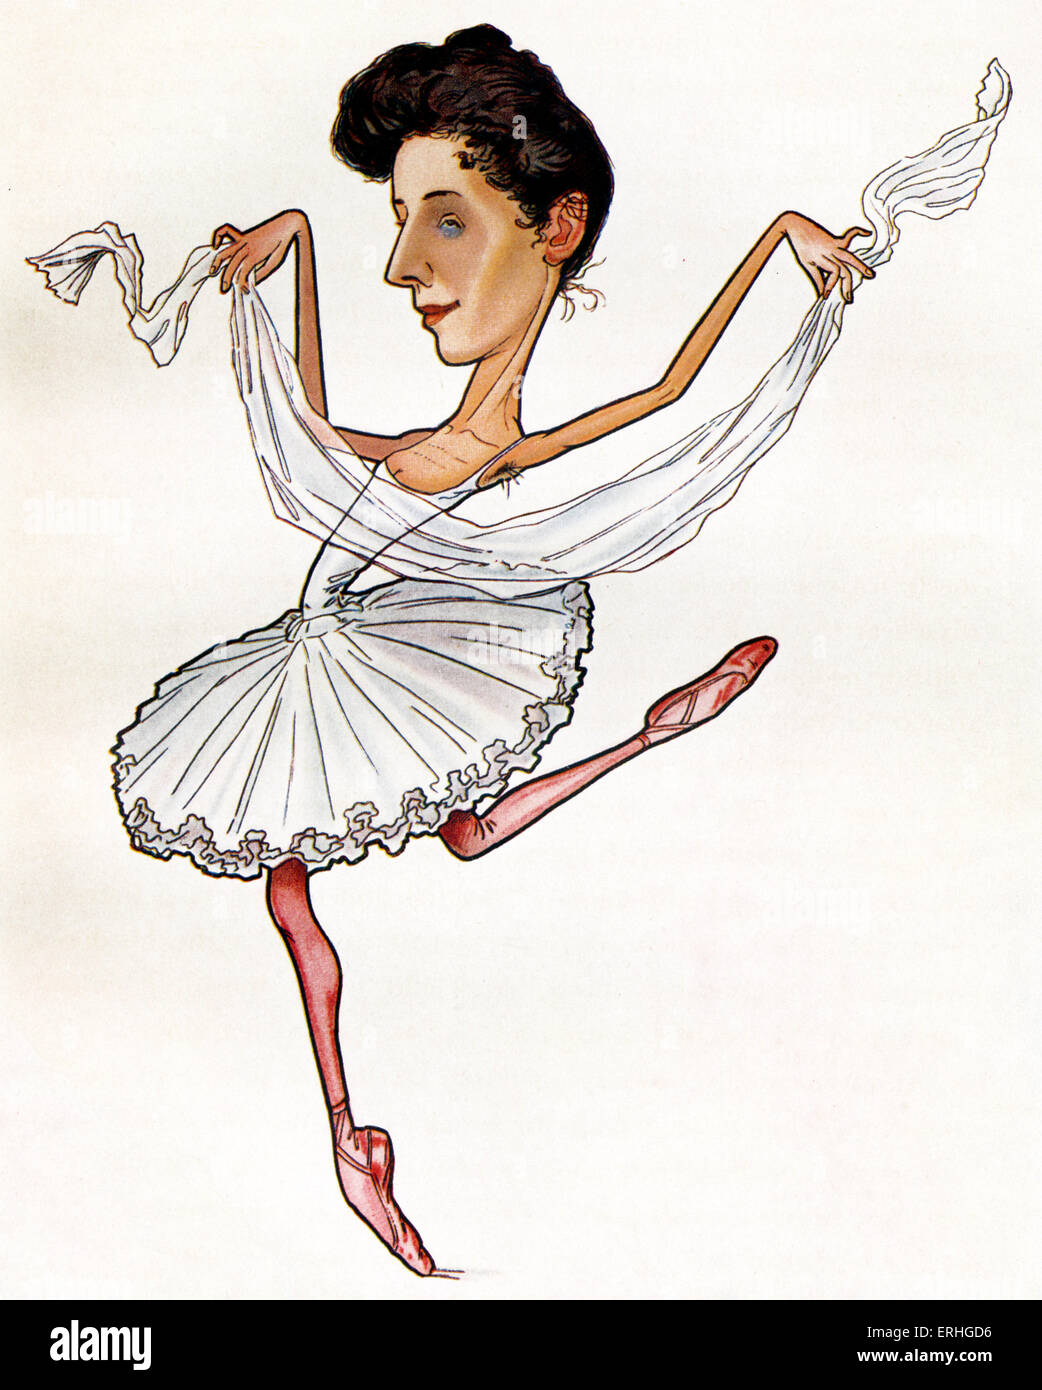 Anna Pavlova, una caricatura de Nicolas Legat. Bailarina rusa el 31 de enero de 1881 - 22 de enero de 1931. Legat: 1869-1937 Foto de stock